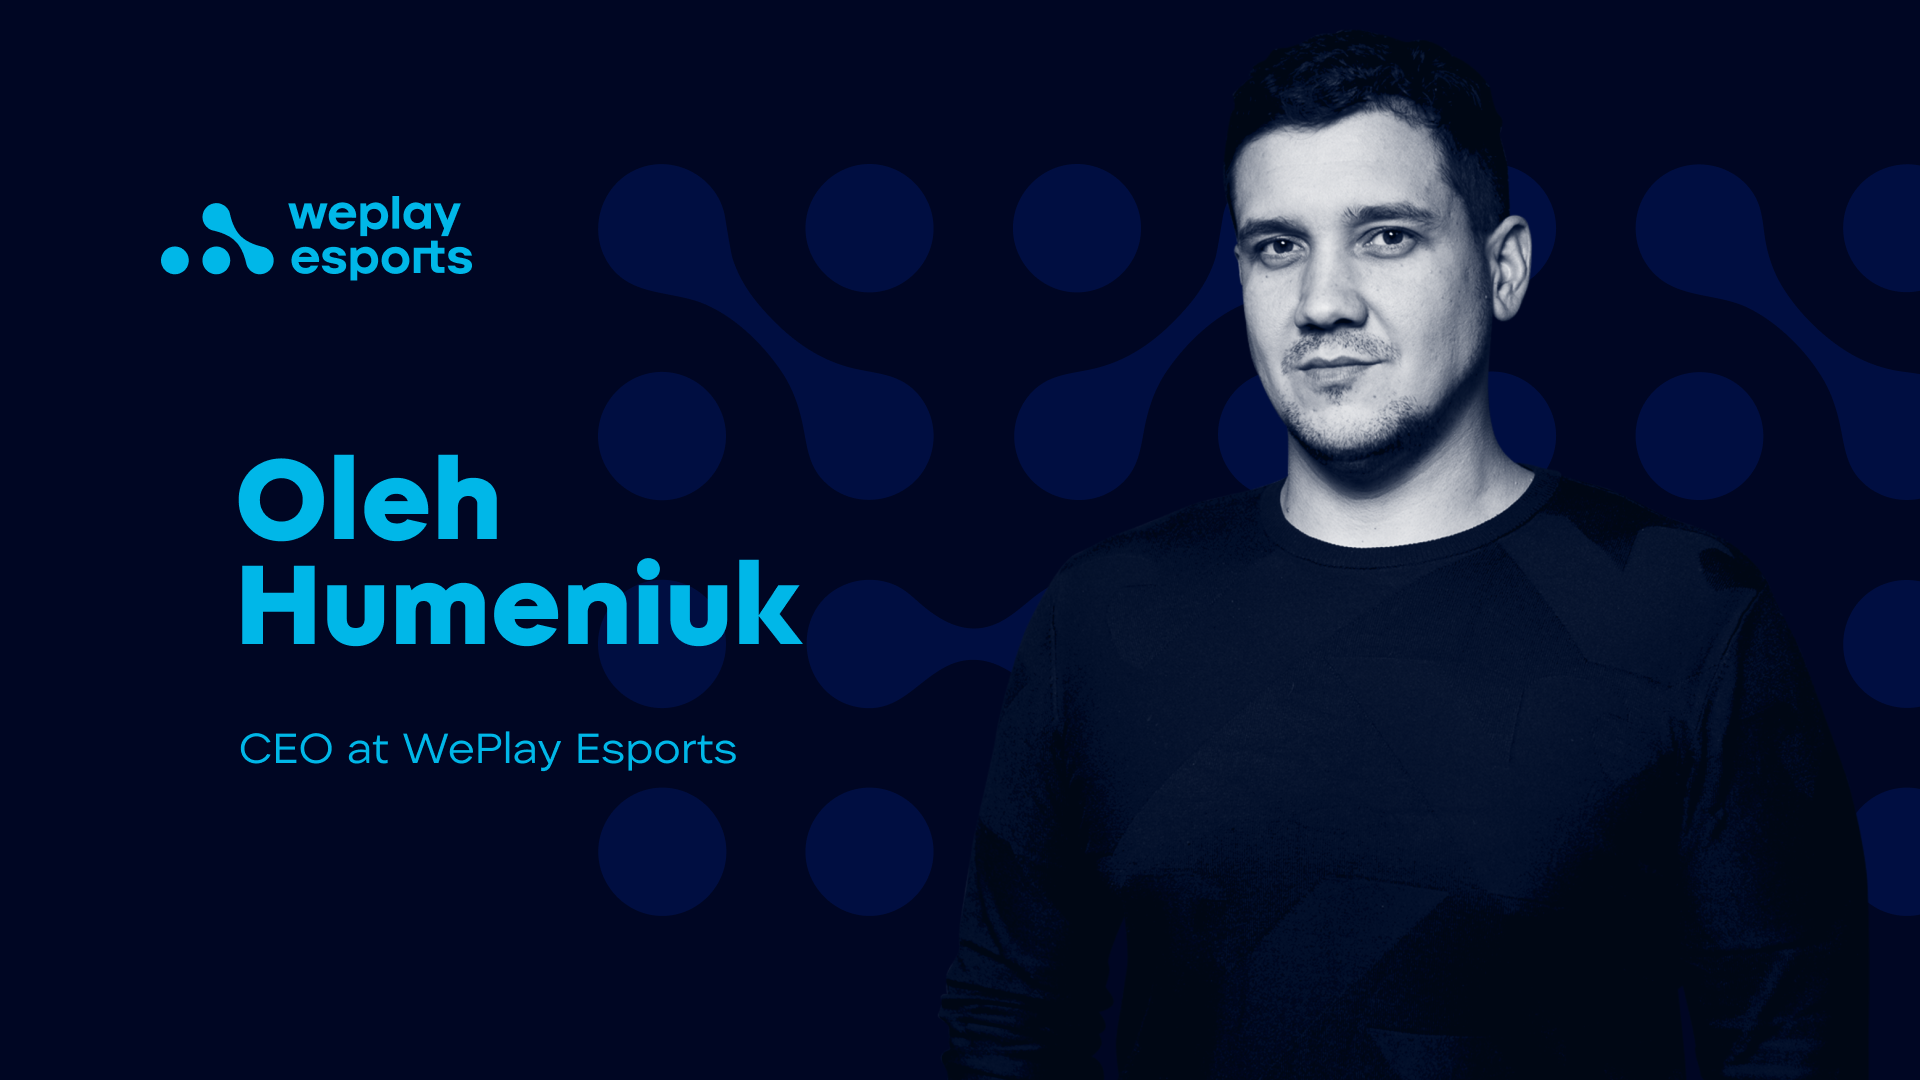 Oleh Humeniuk CEO at WePlay Esports